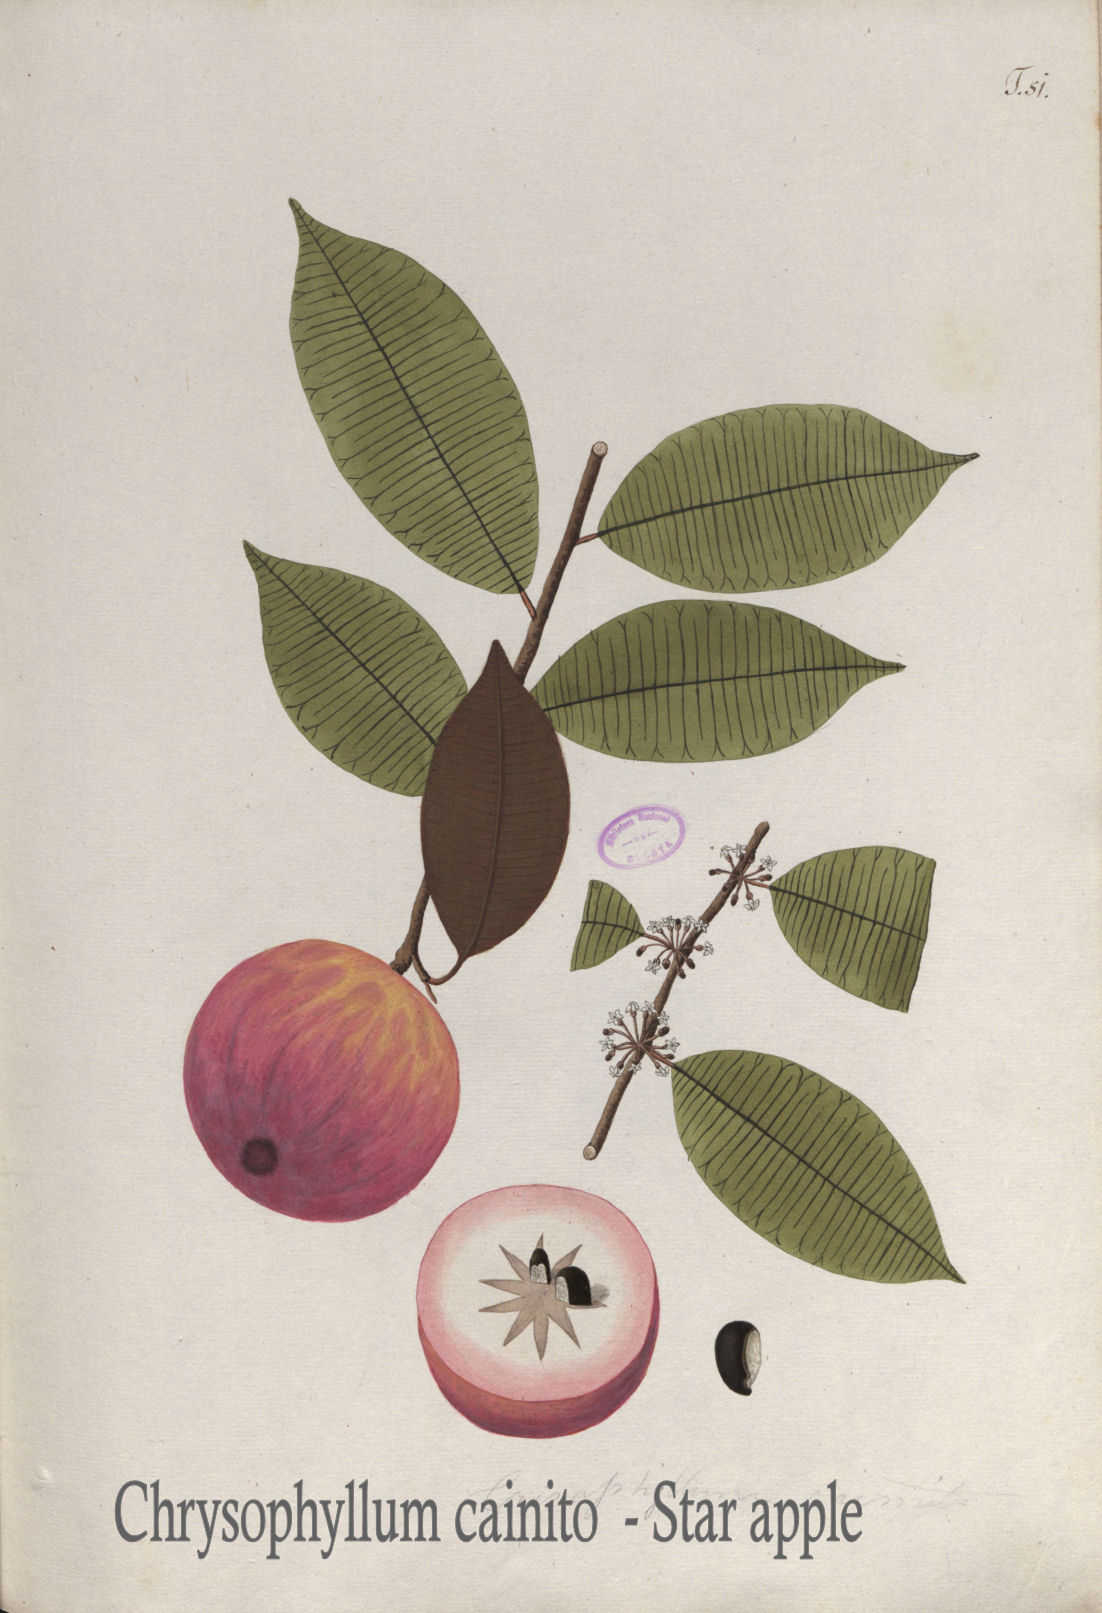 Chrysophyllum cainito - Star apple